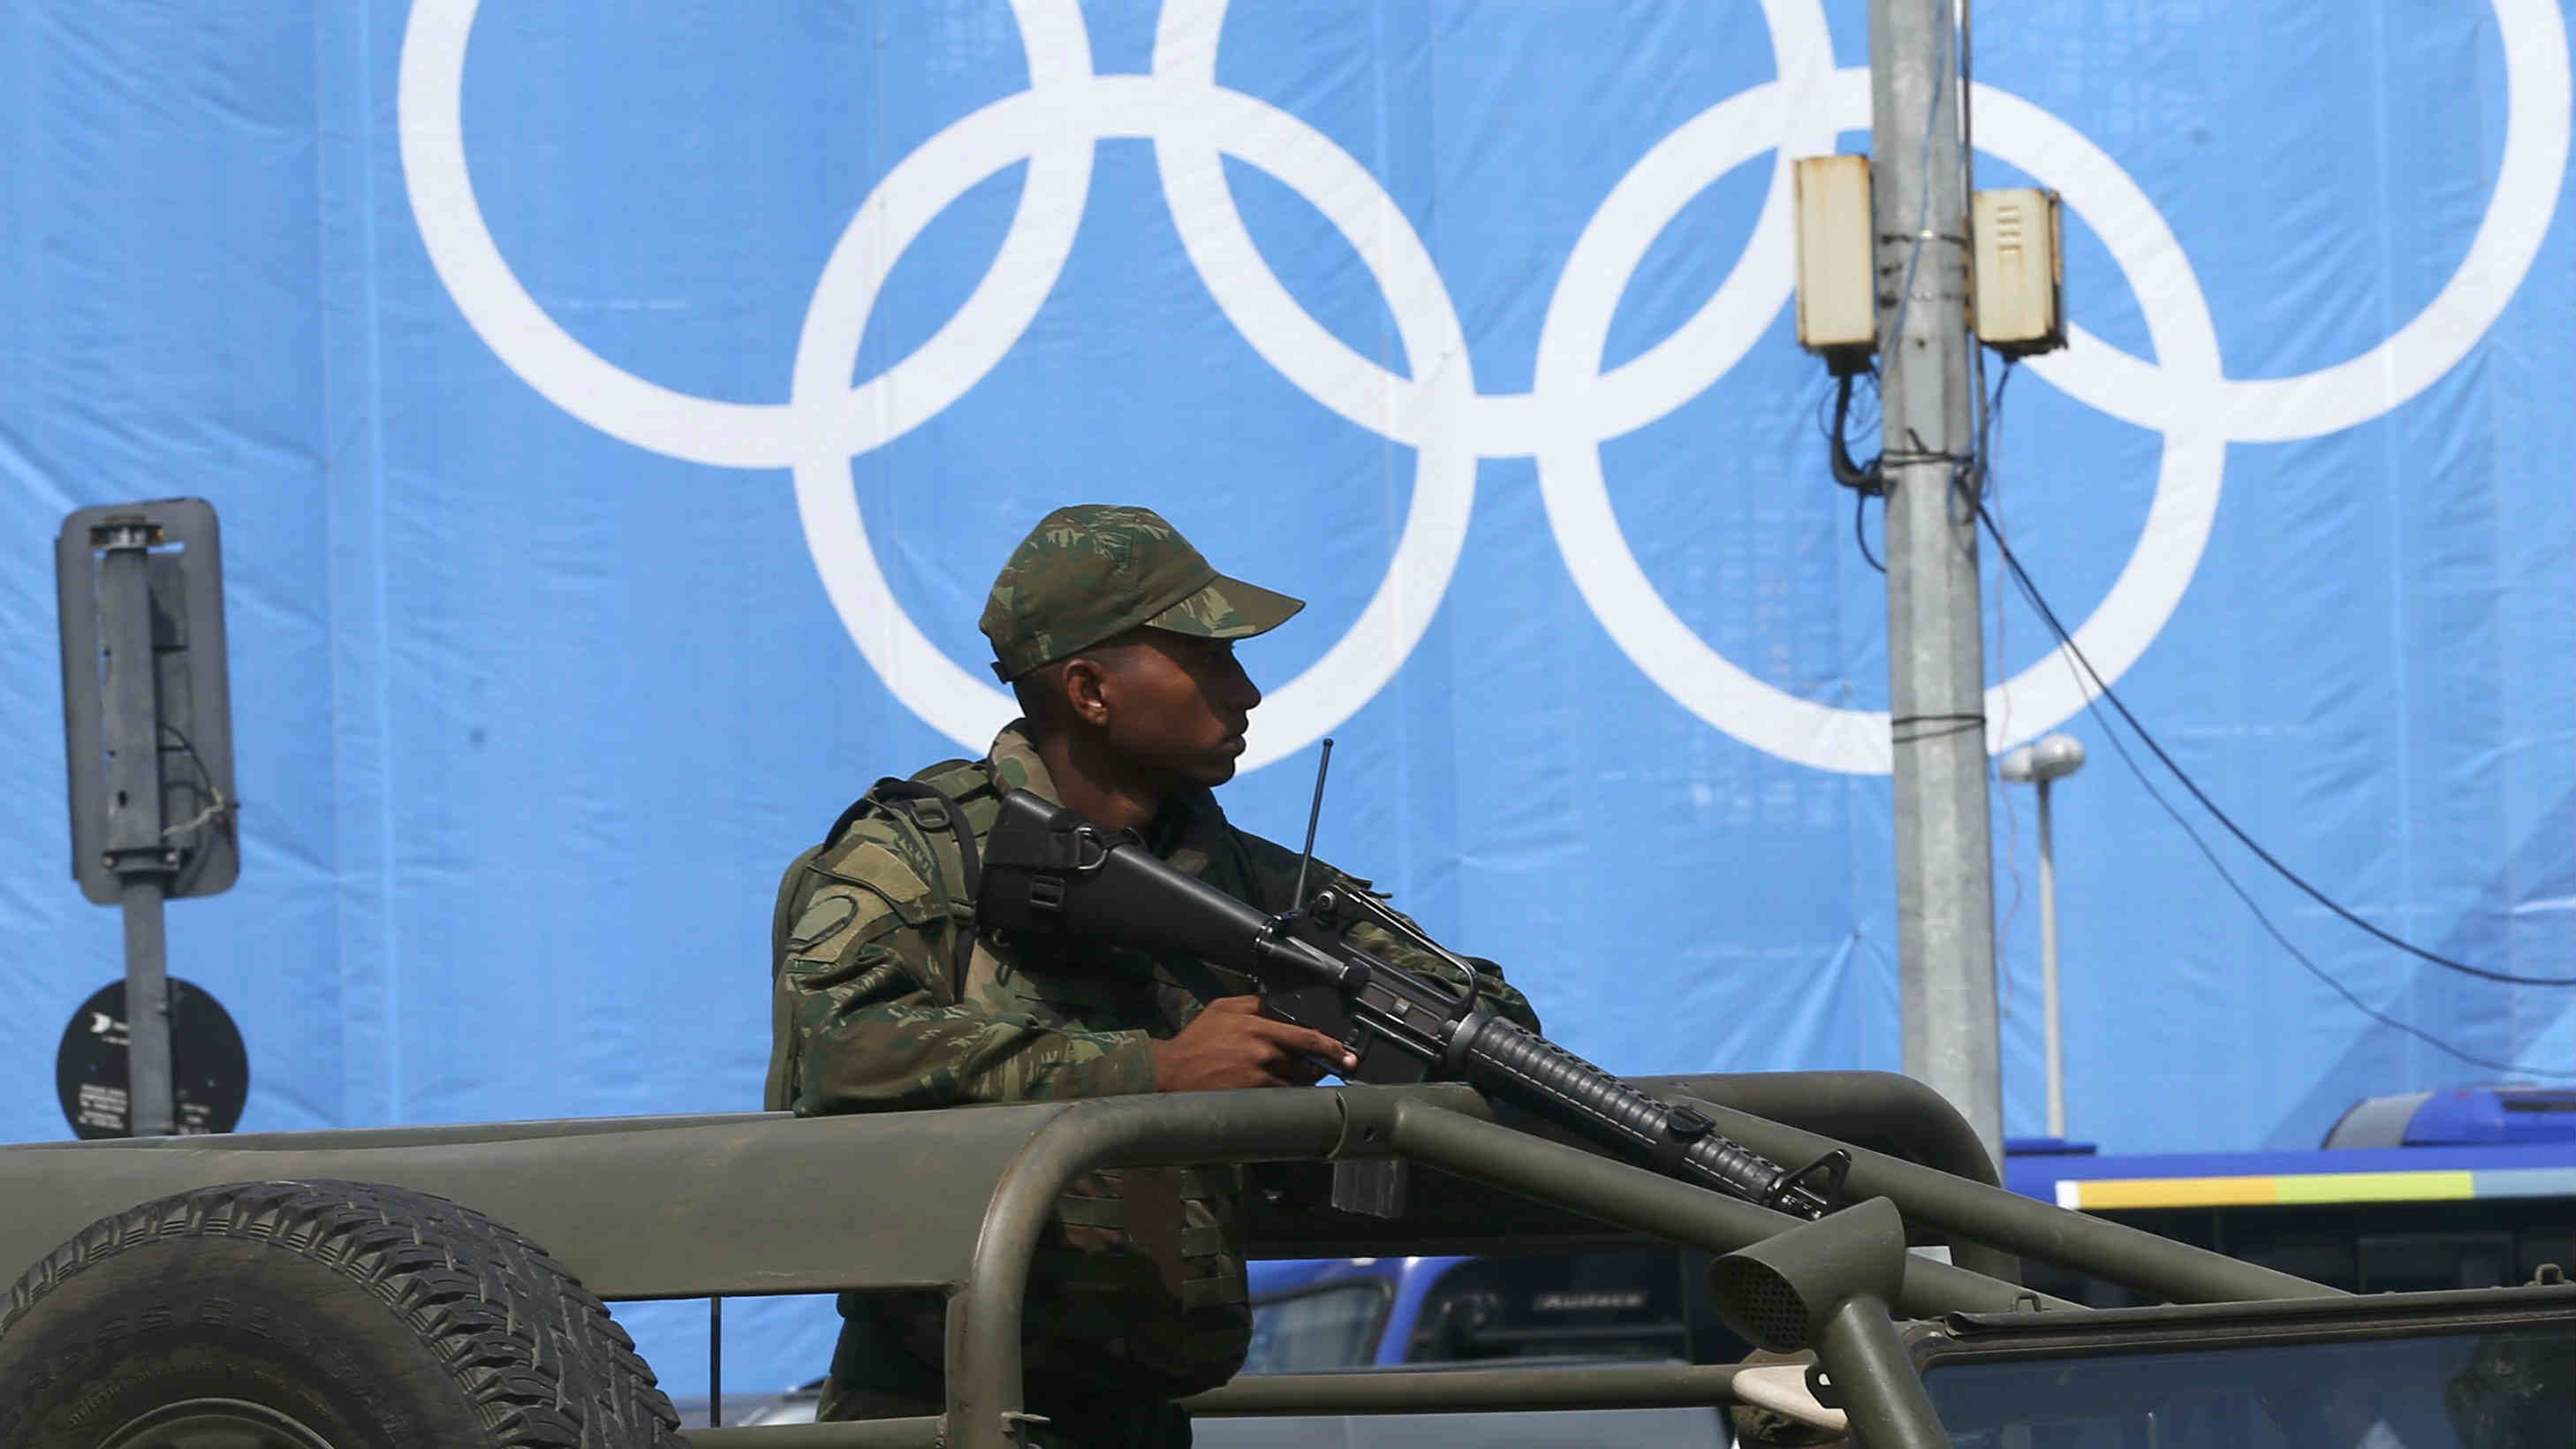 Un efectivo del ejército vigila una instalación olímpica en Río. (AFP)